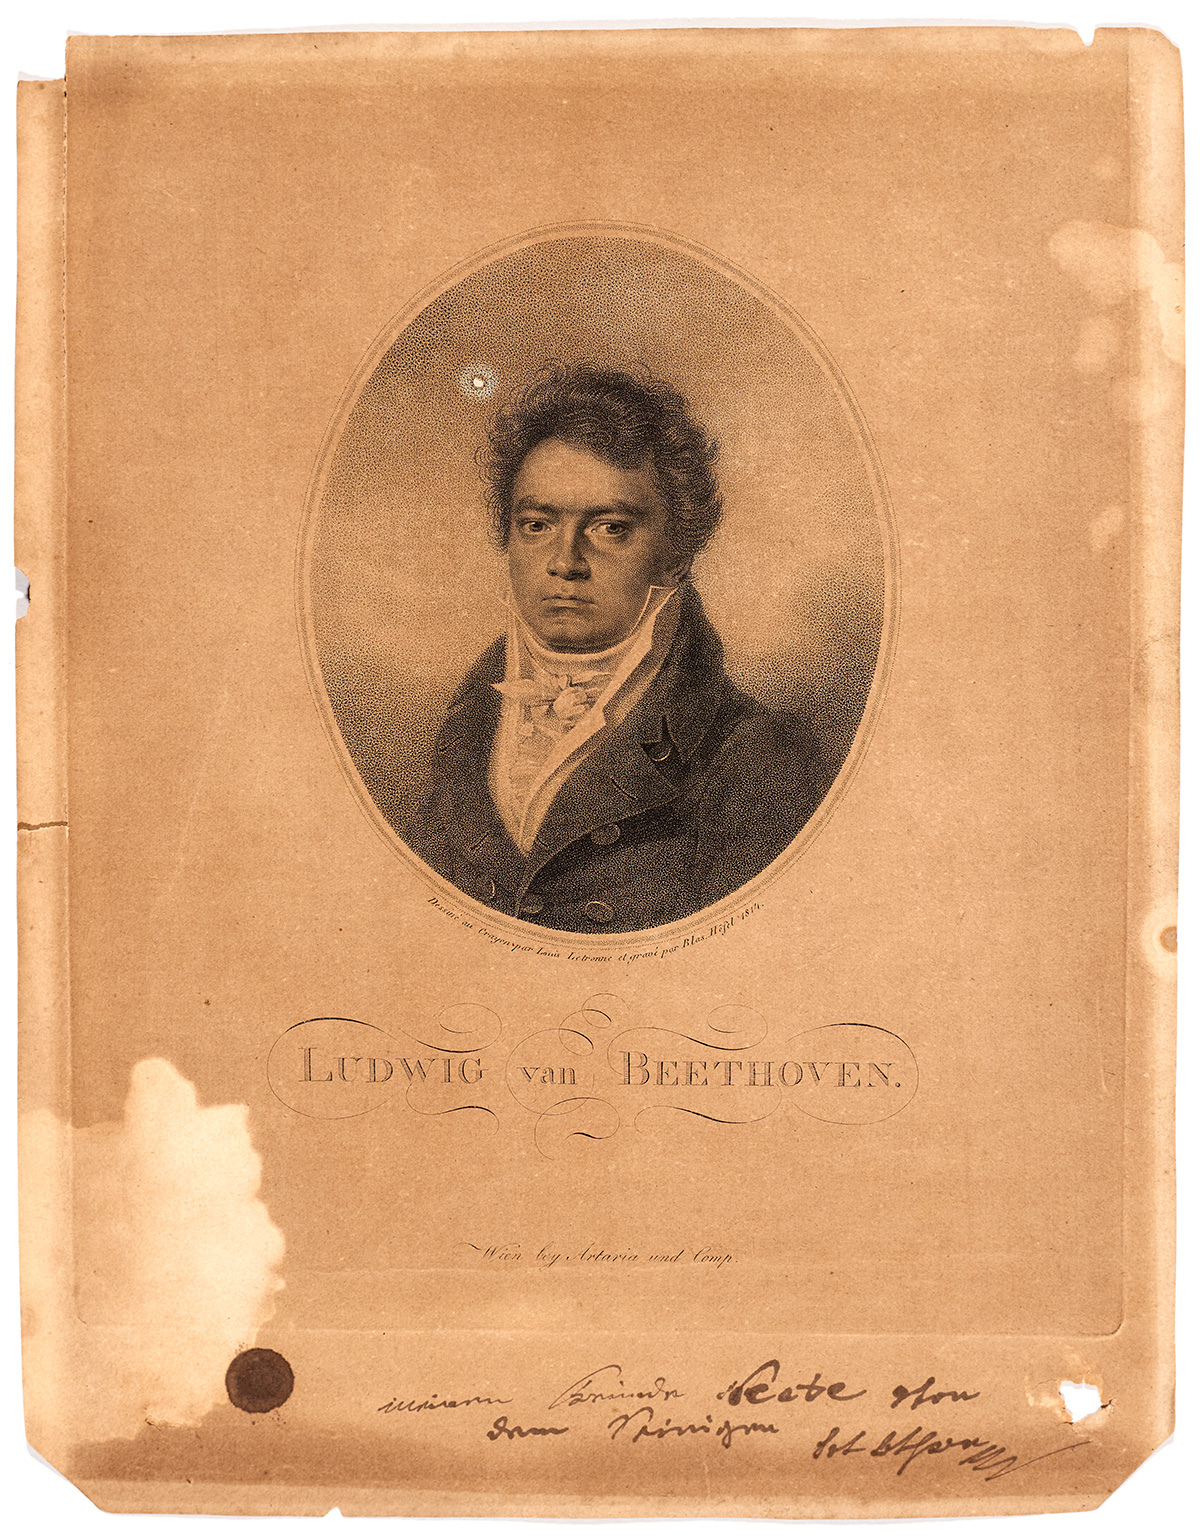 Ludwig van Beethoven, engraving by Blasius Höfel (1792-1863)